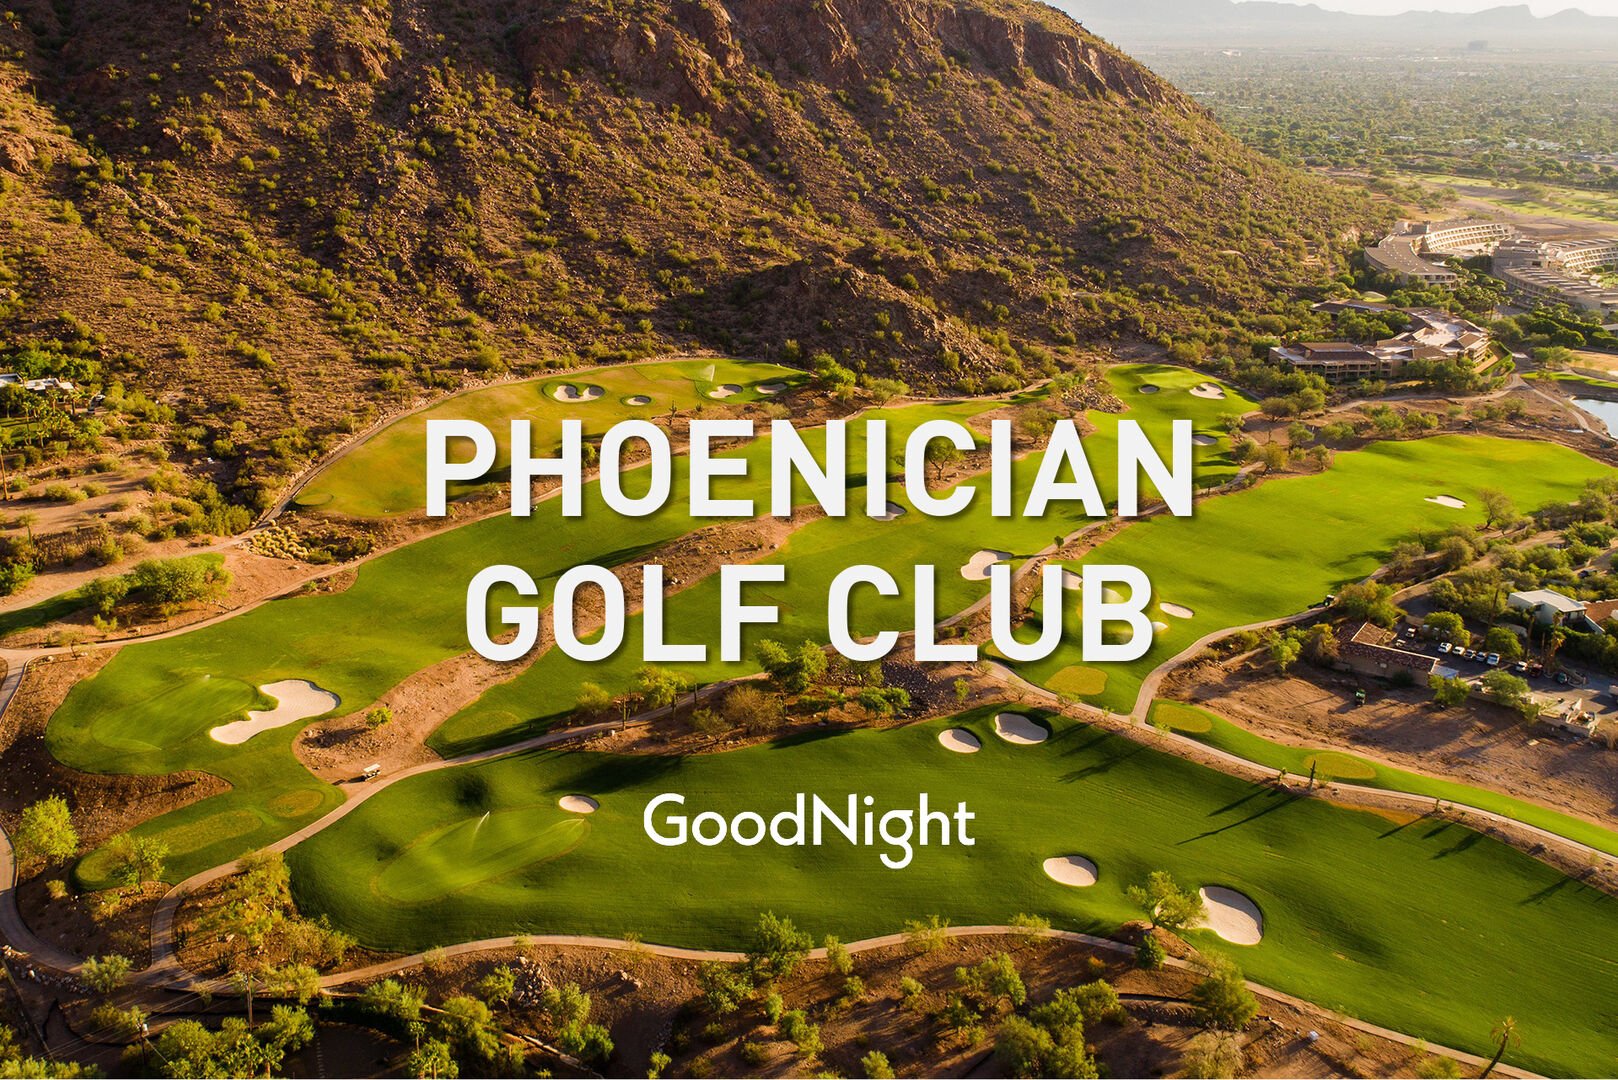 13 mins: Phoenician golf club